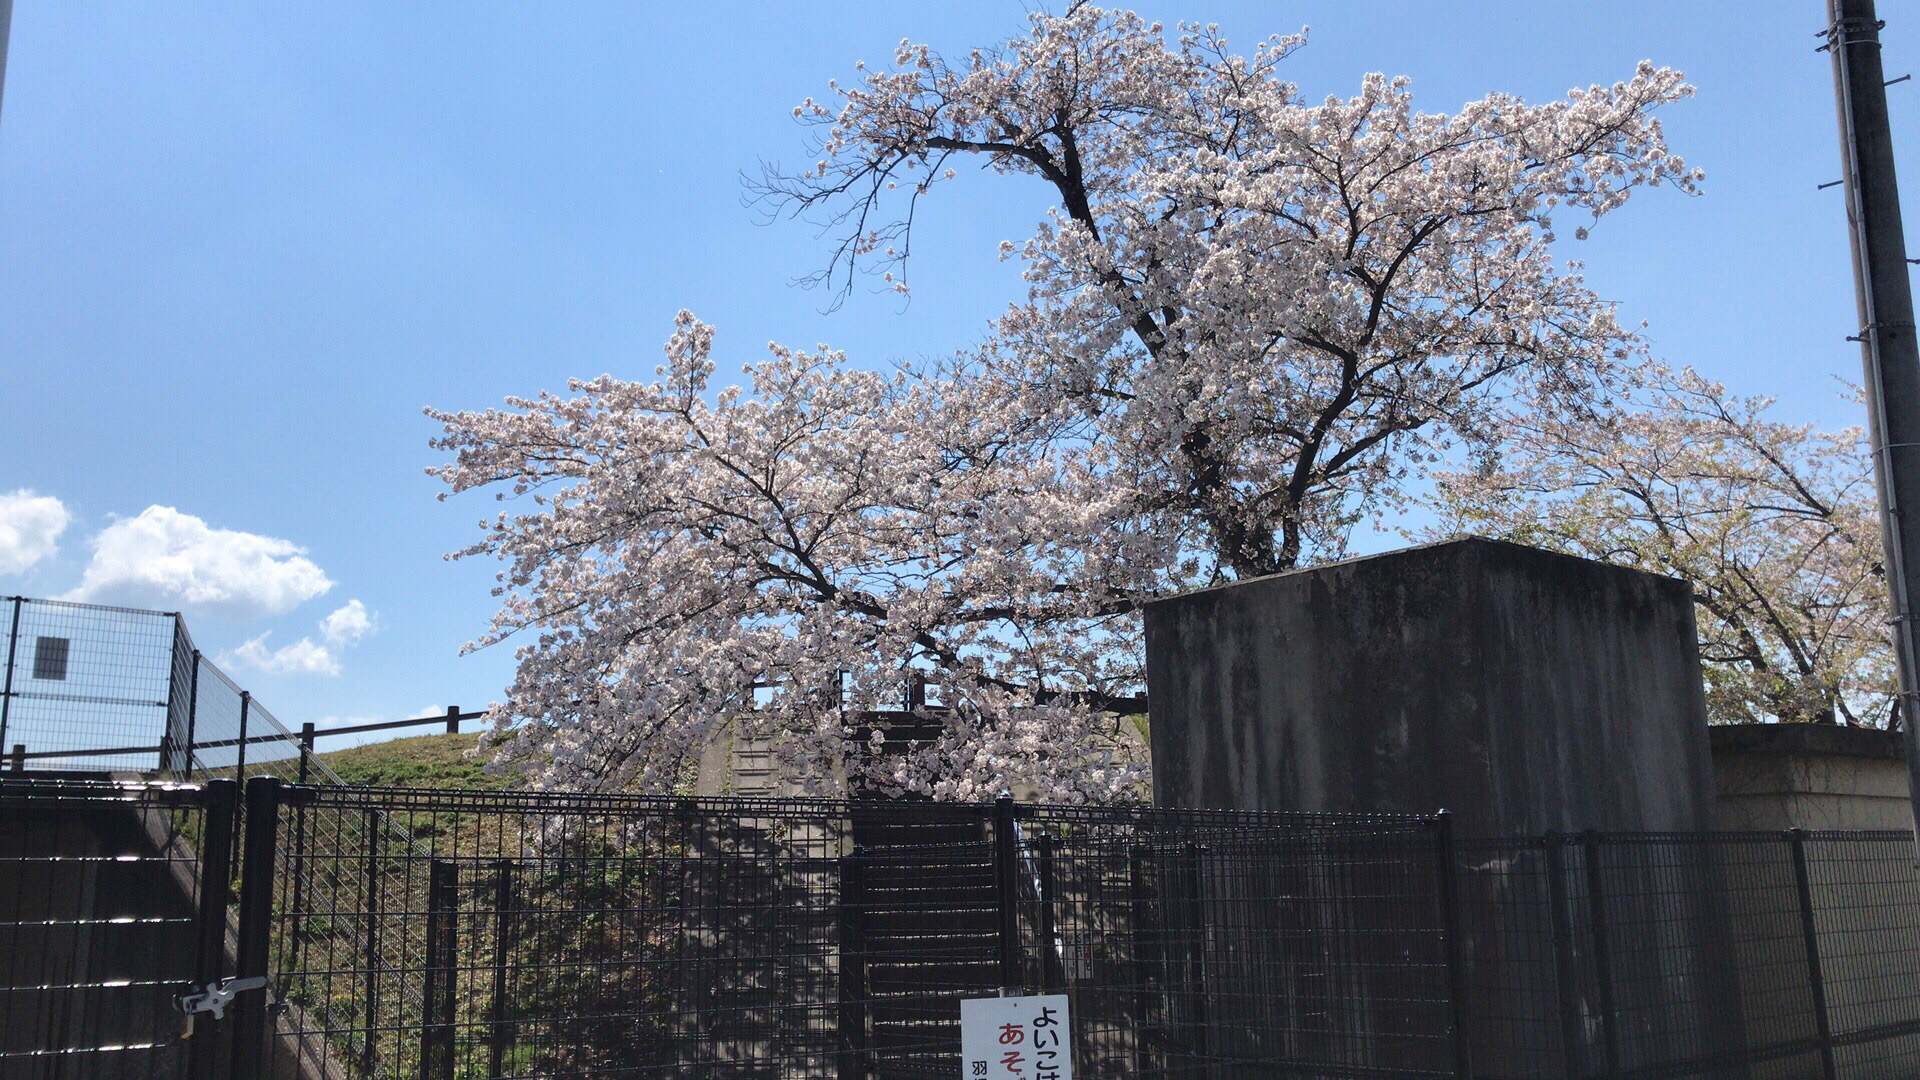 灿烂的樱花很漂亮、赏樱散步很舒服。